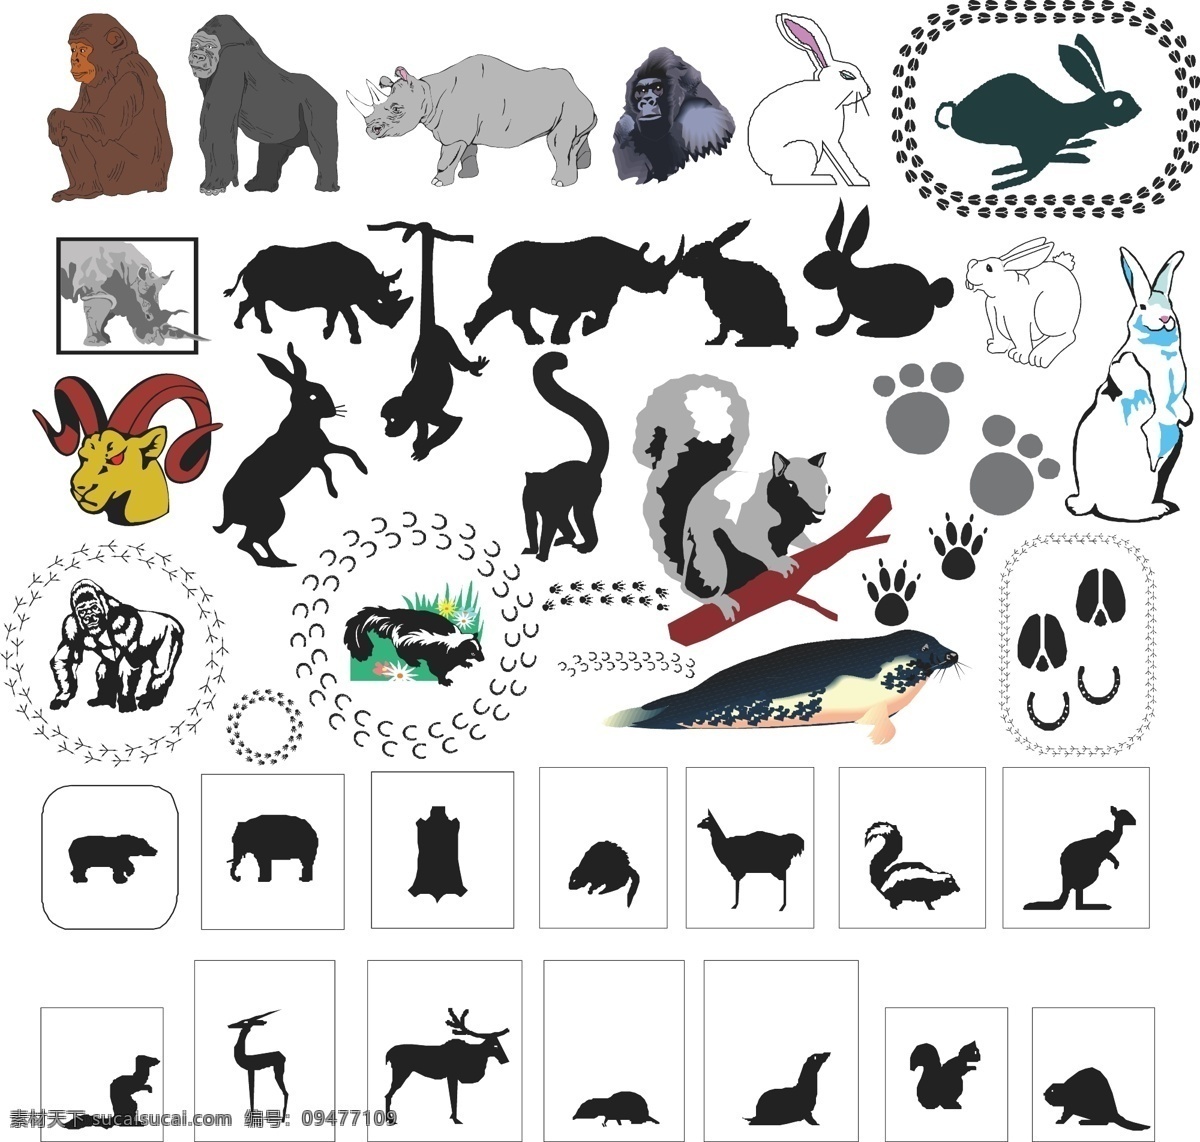 兔子 猩猩 犀牛 图标 剪影 卡通 可爱生活 表情 动物图形元素 野生动物 生物世界 矢量